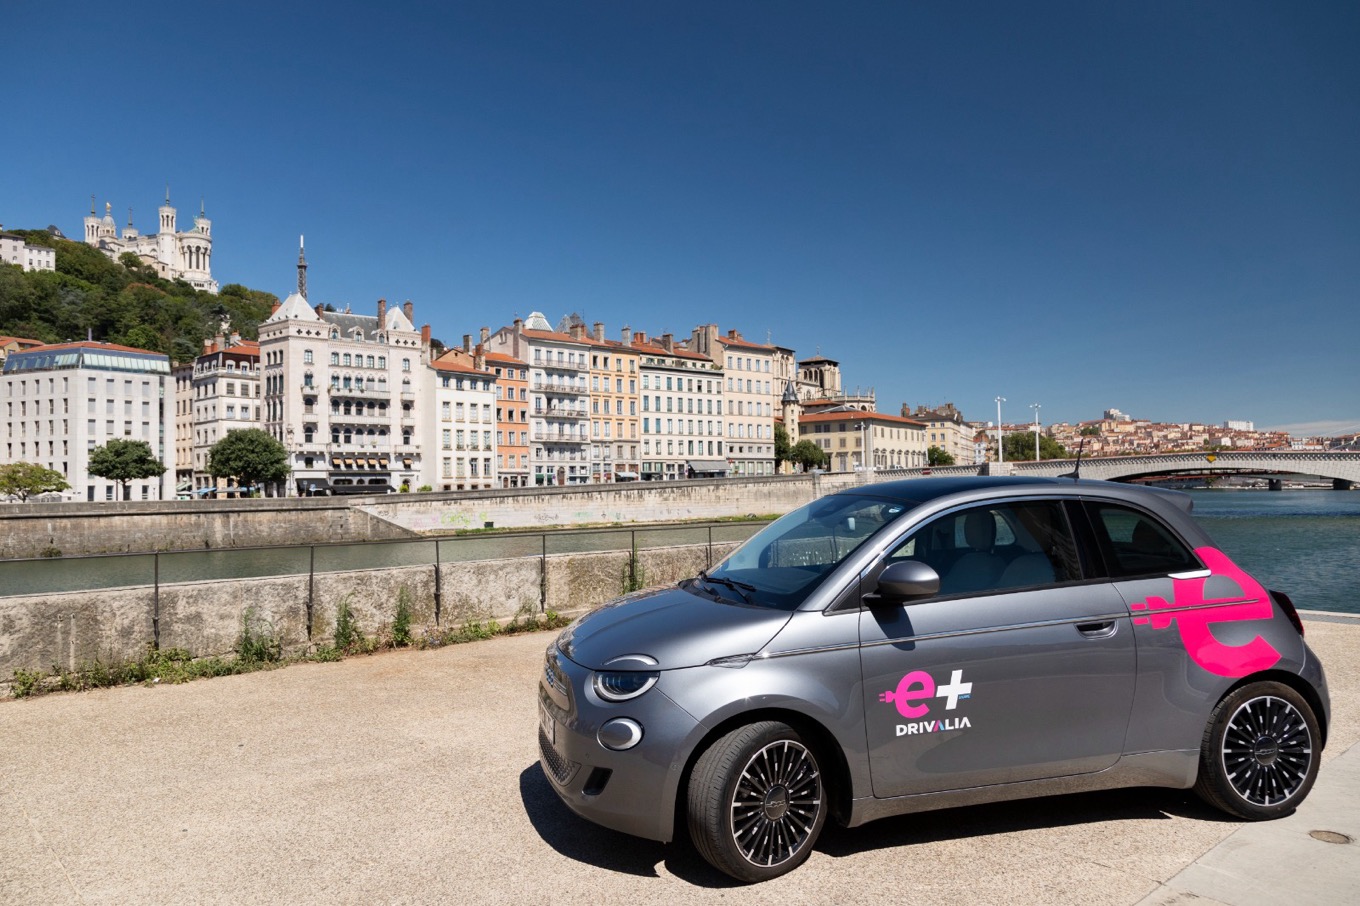 Autopartage E+Share Drivalia à Lyon